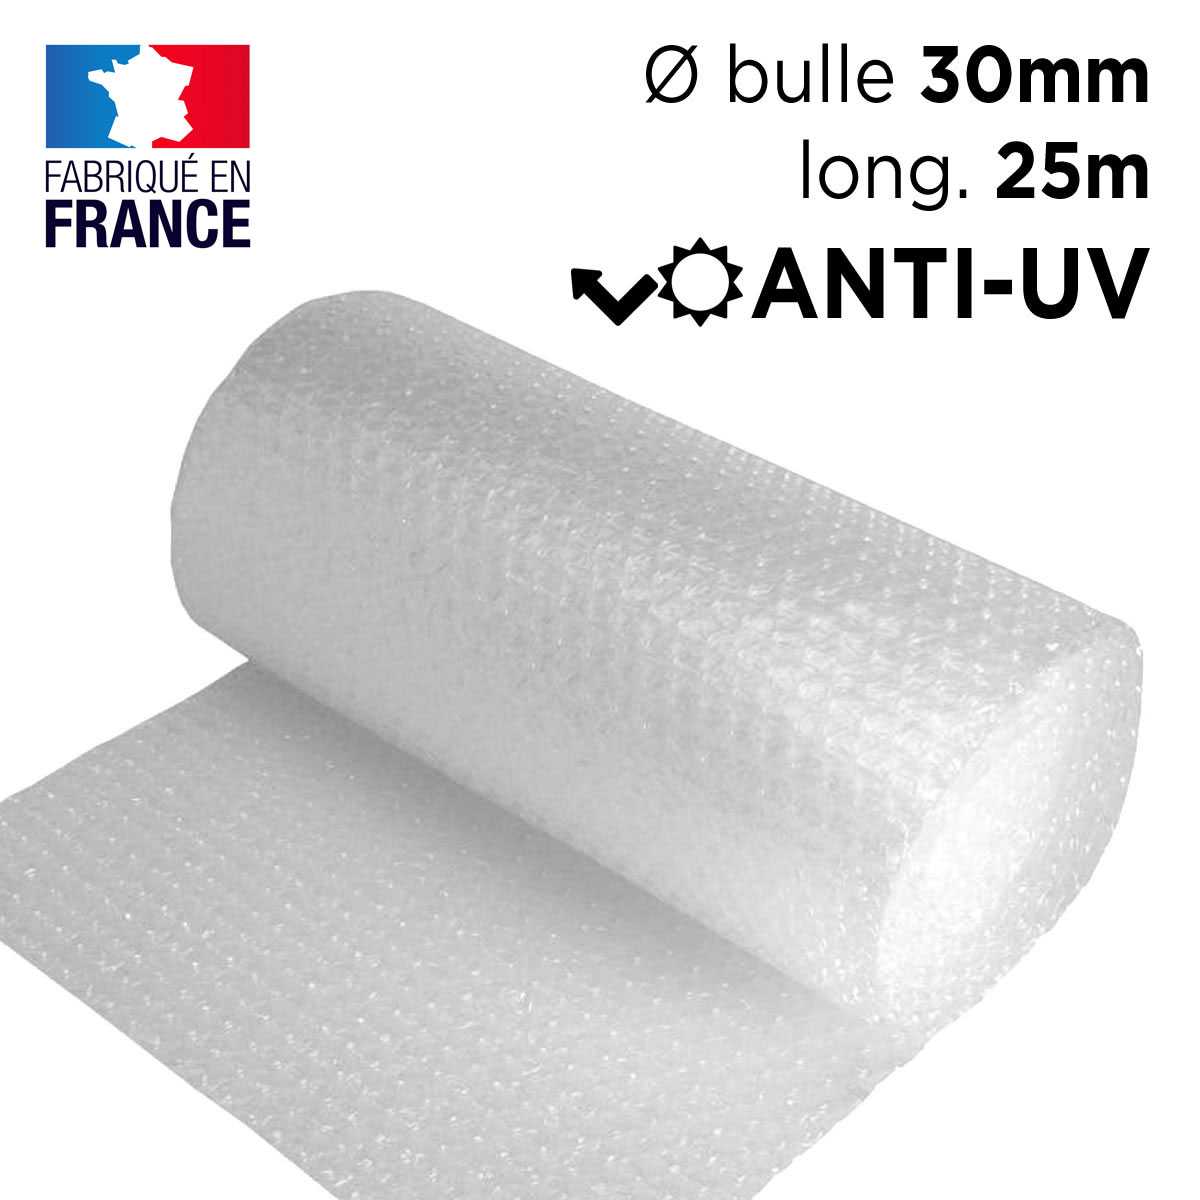 500 mm x 50 m Roll grand papier bulle 50 Mètre combiner p&p